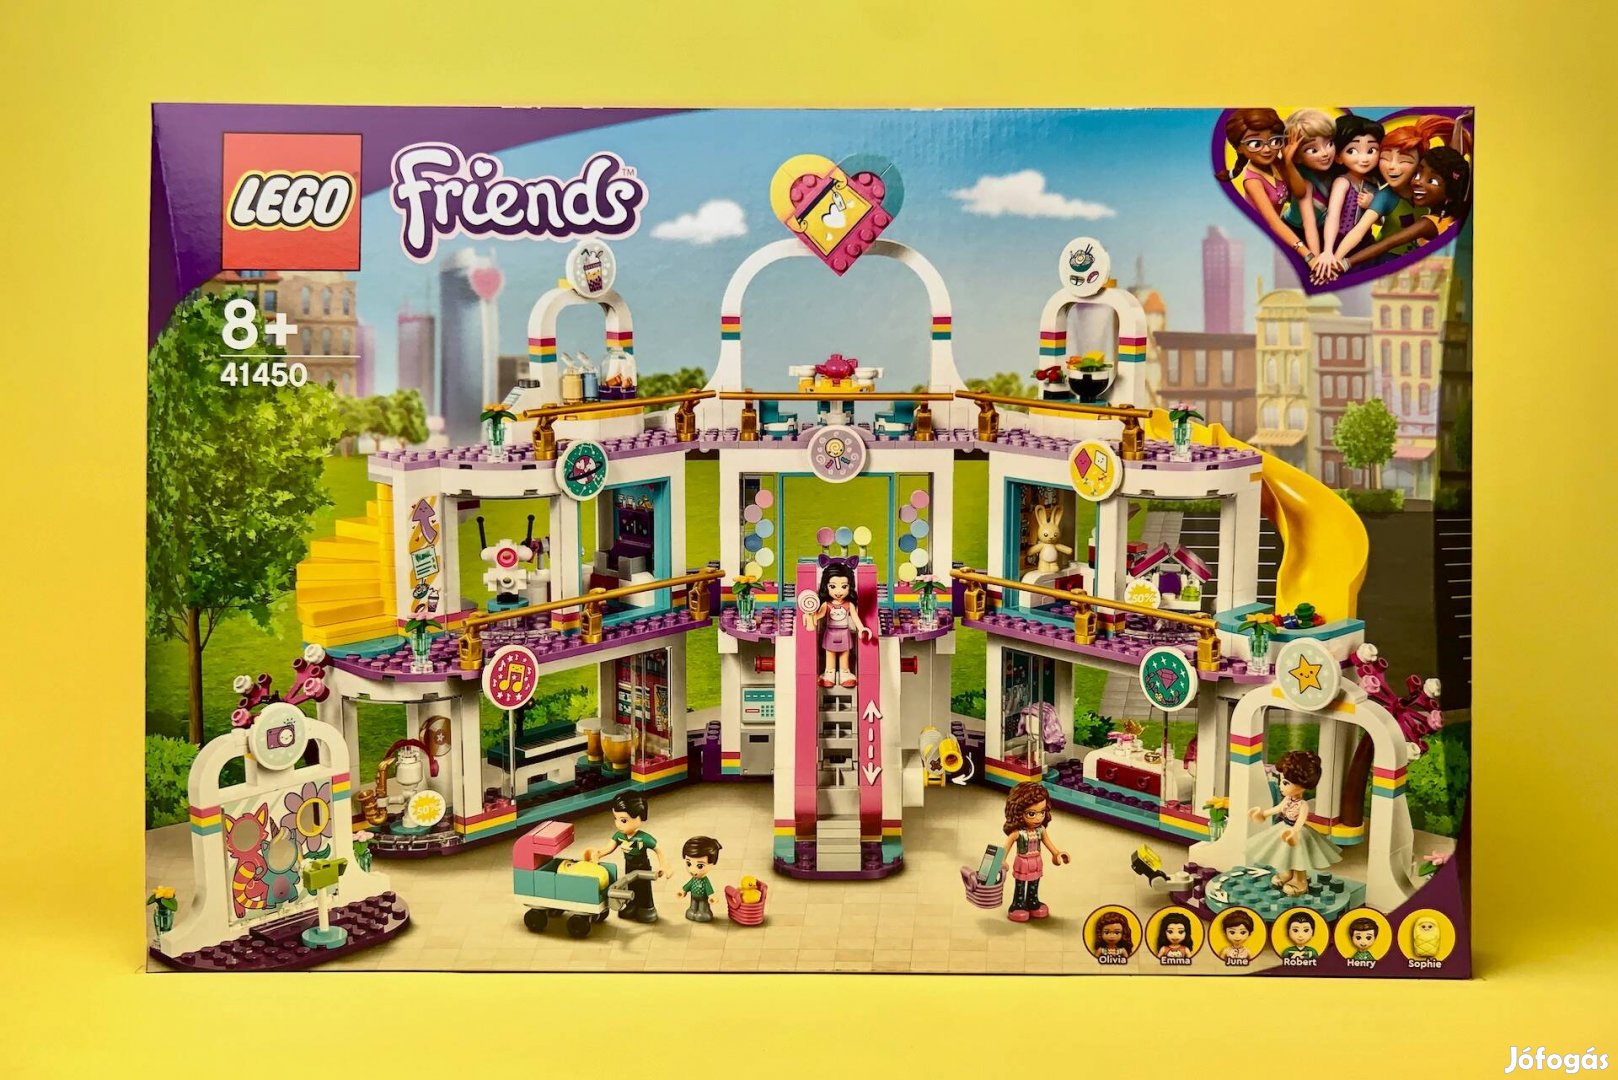 LEGO Friends 41450 Heartlake City Shopping Mall, Uj, Bontatlan